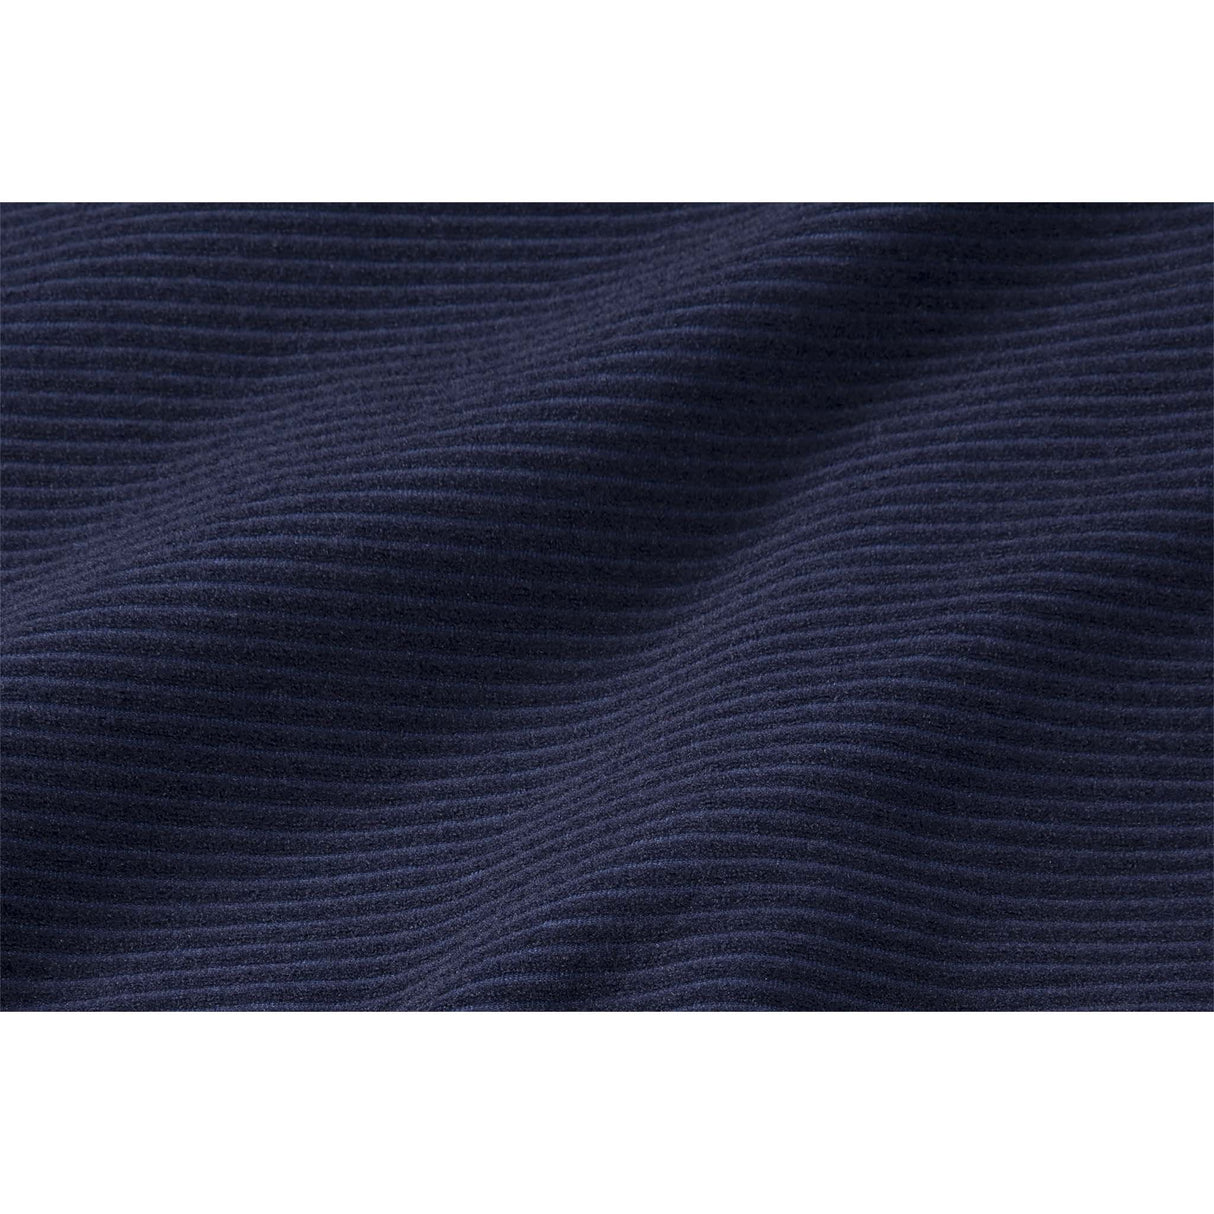 Brooks Notch Thermal chandail de course à manches longues bleu marine homme textile